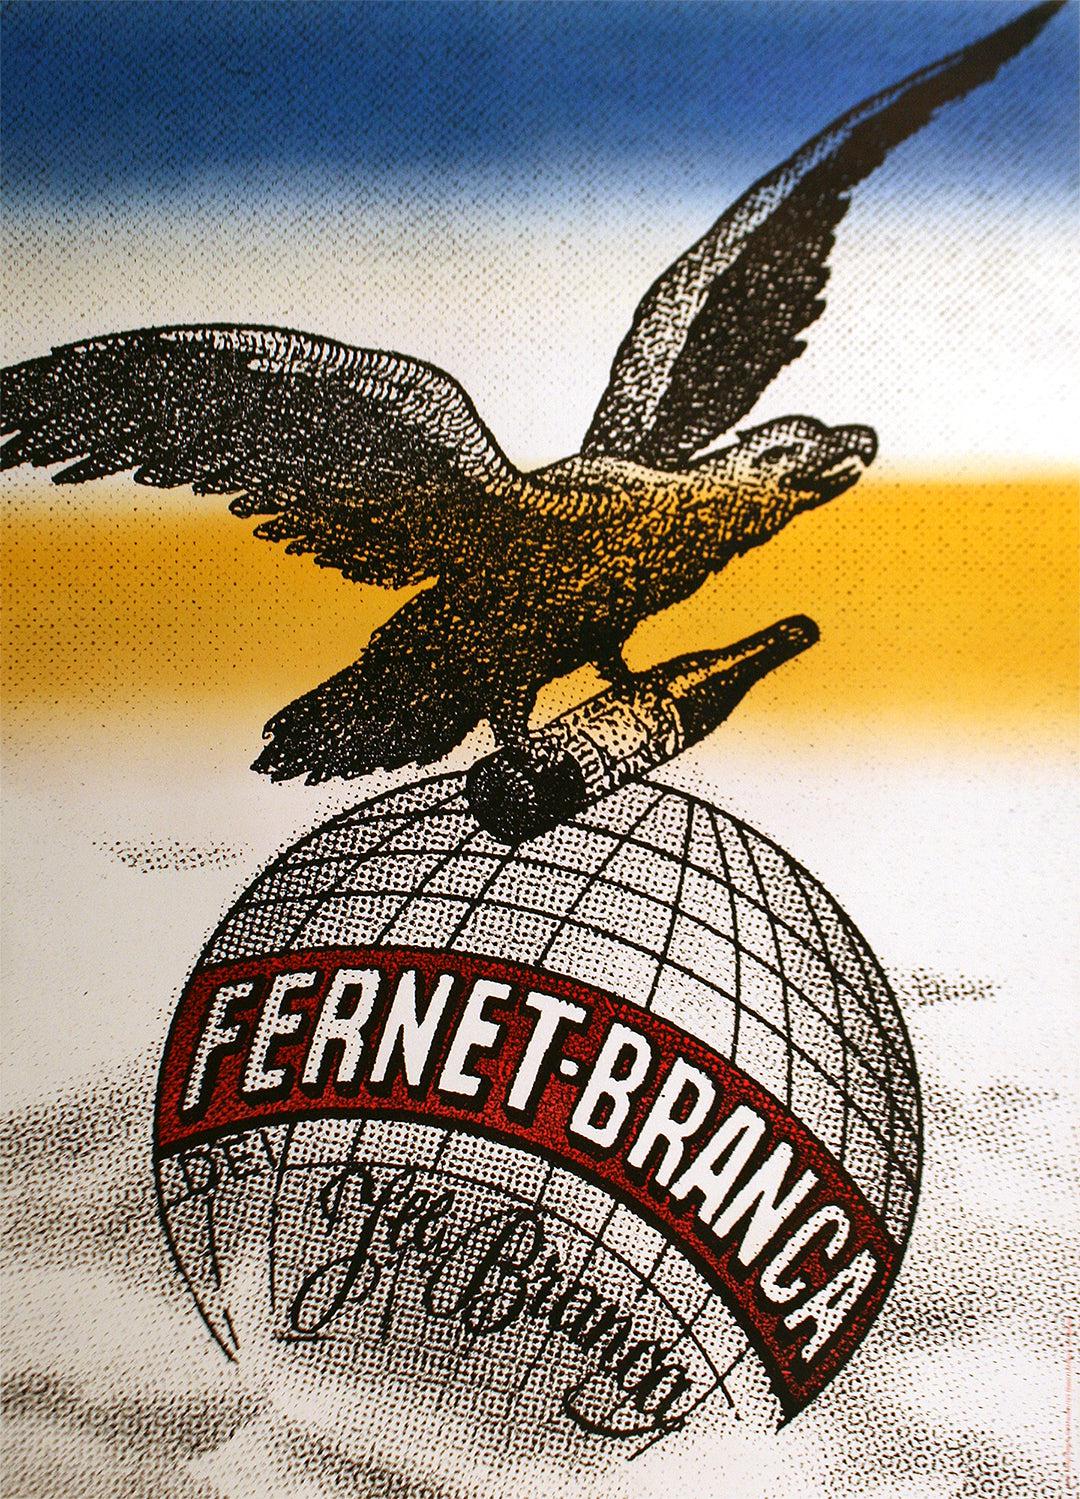 Original Vintage Fernet Branca Poster by Urs Glaser c1970